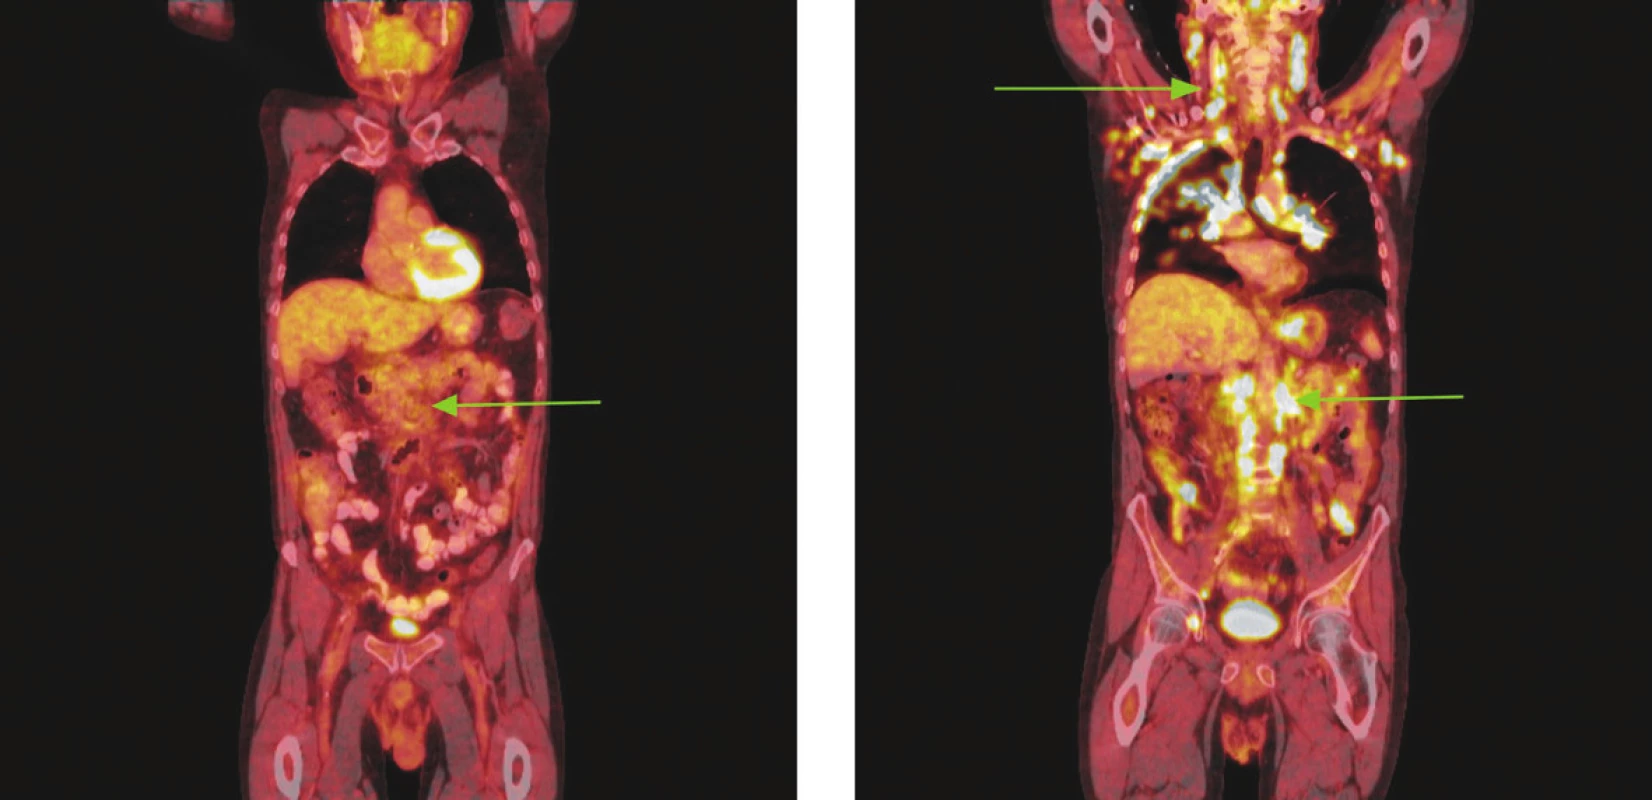 Série PET/CT snímků u nemocného s difuzním B-velkobuněčným lymfomem po imunochemoterapii a při relapsu choroby o 18 měsíců později. Na prvním snímku po léčbě nalezeny pouze zvětšené lymfatické uzliny mediastina a měkkotkáňová masa v retroperitoneu podél aorty od odstupu renálních tepen po bifurkaci nevykazující hypermetabolismus glukózy. Pro kumulaci rizikových faktorů indikována radioterapie na zbytkovou masu retroperitonea. Na druhém snímku obraz relapsu choroby, kdy nalezeny mnohočetné zvětšené lymfatické uzliny na krku, v oblasti tonzil, v axilách, ve všech oddílech mediastina, v retroperitoneu podél aorty a dolní duté žíly splývající v pakety, v lymfatických uzlinách na mezenteriu, podél pravé ilické tepny, dále pak ve vícečetných ložiscích obou plic a ve skeletu pravého acetabula vykazující hypermetabolismus glukózy.